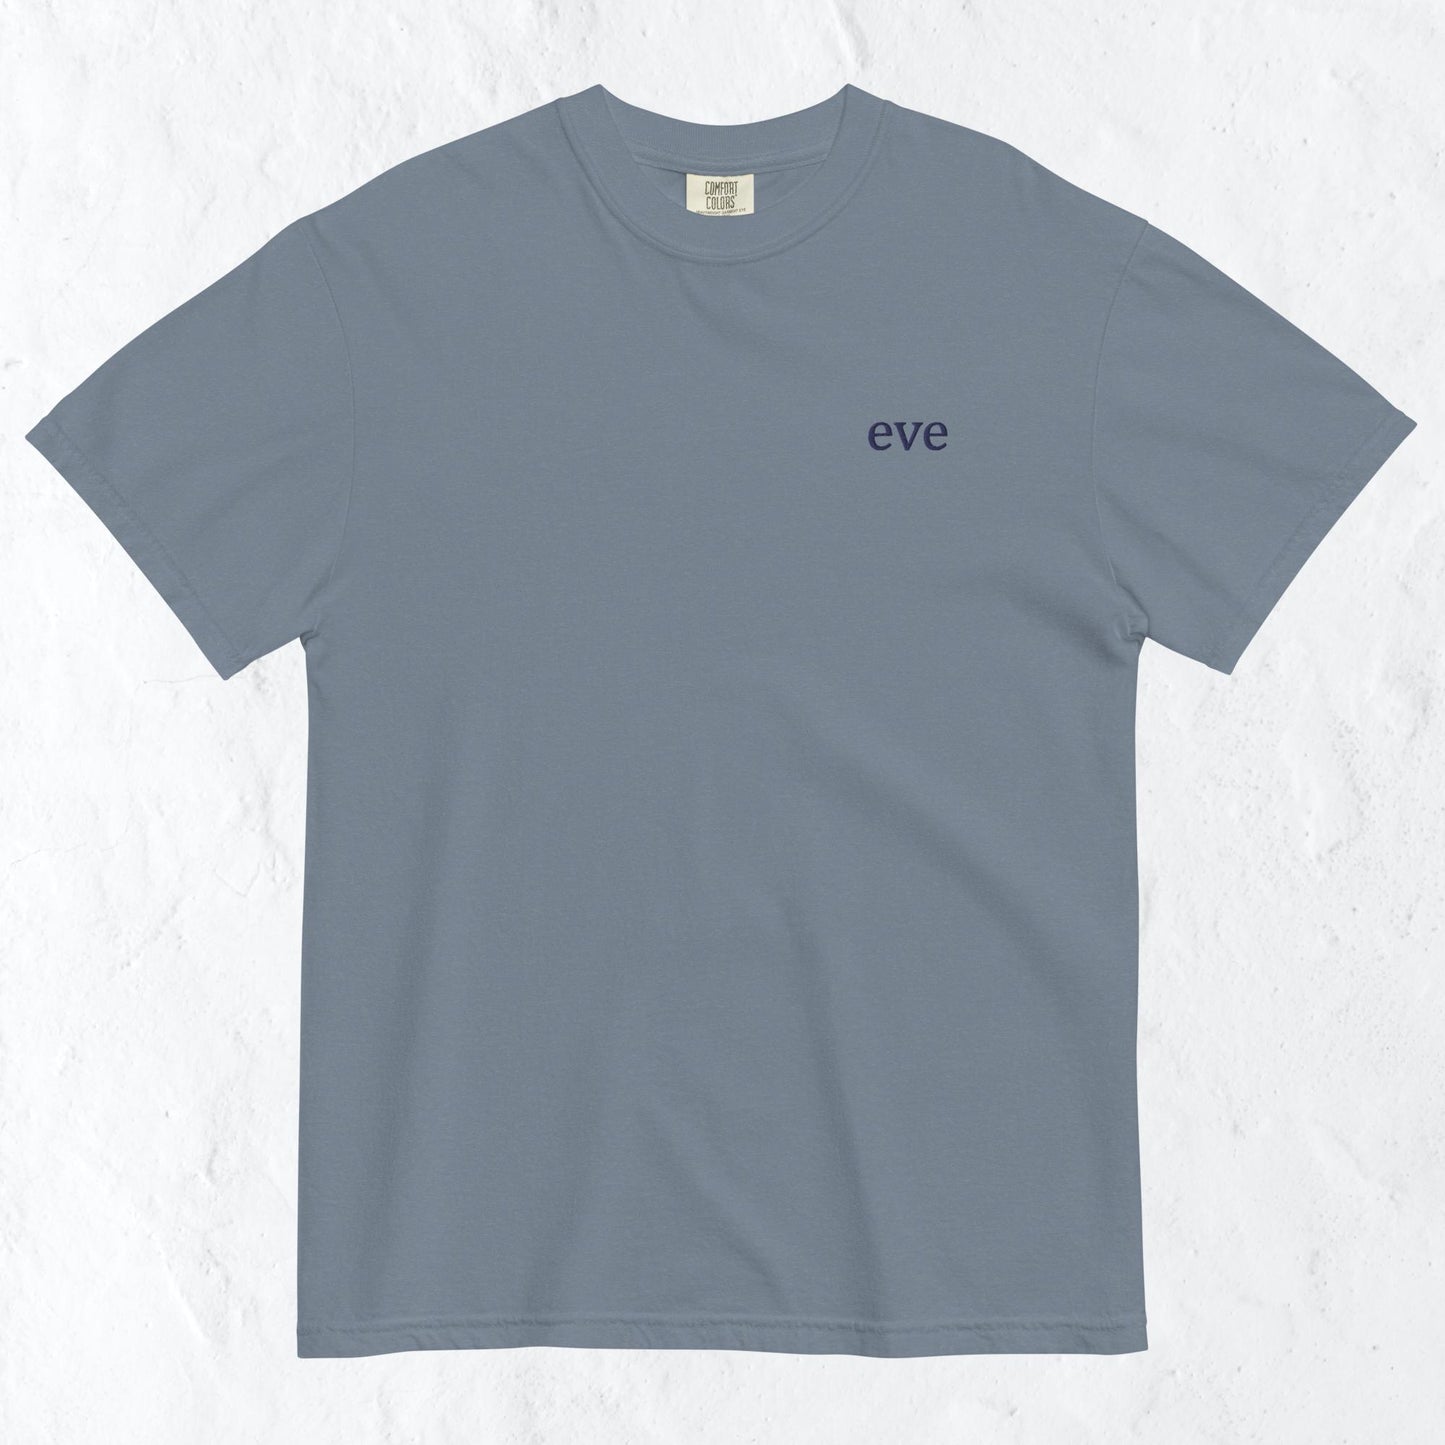 "eve" list t-shirt